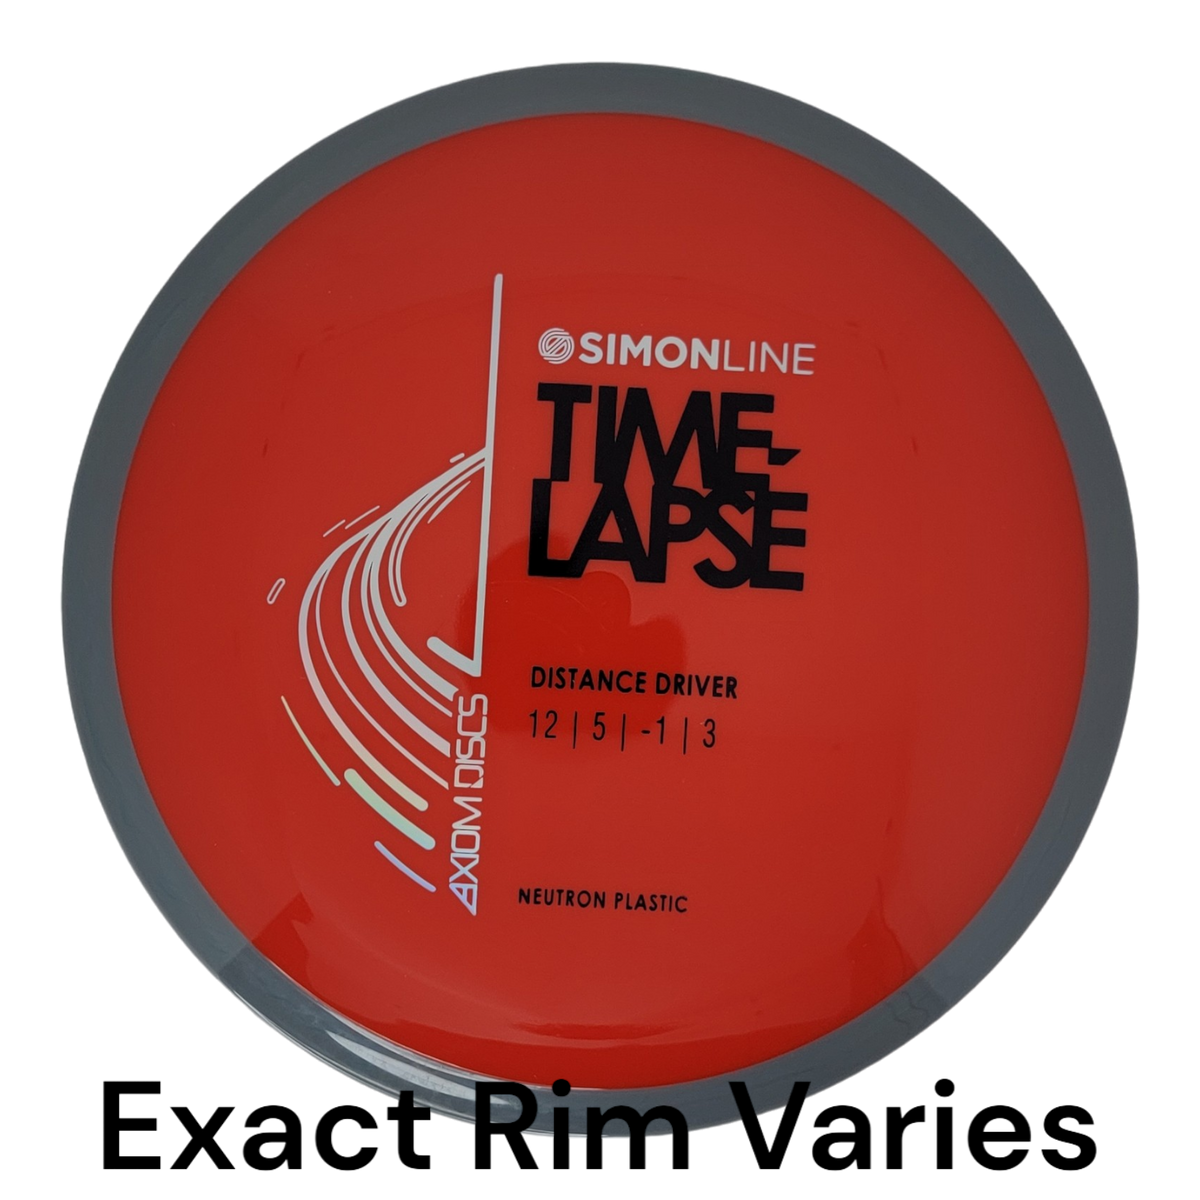 MVP Simon Lizotte Simon Line Time-Lapse